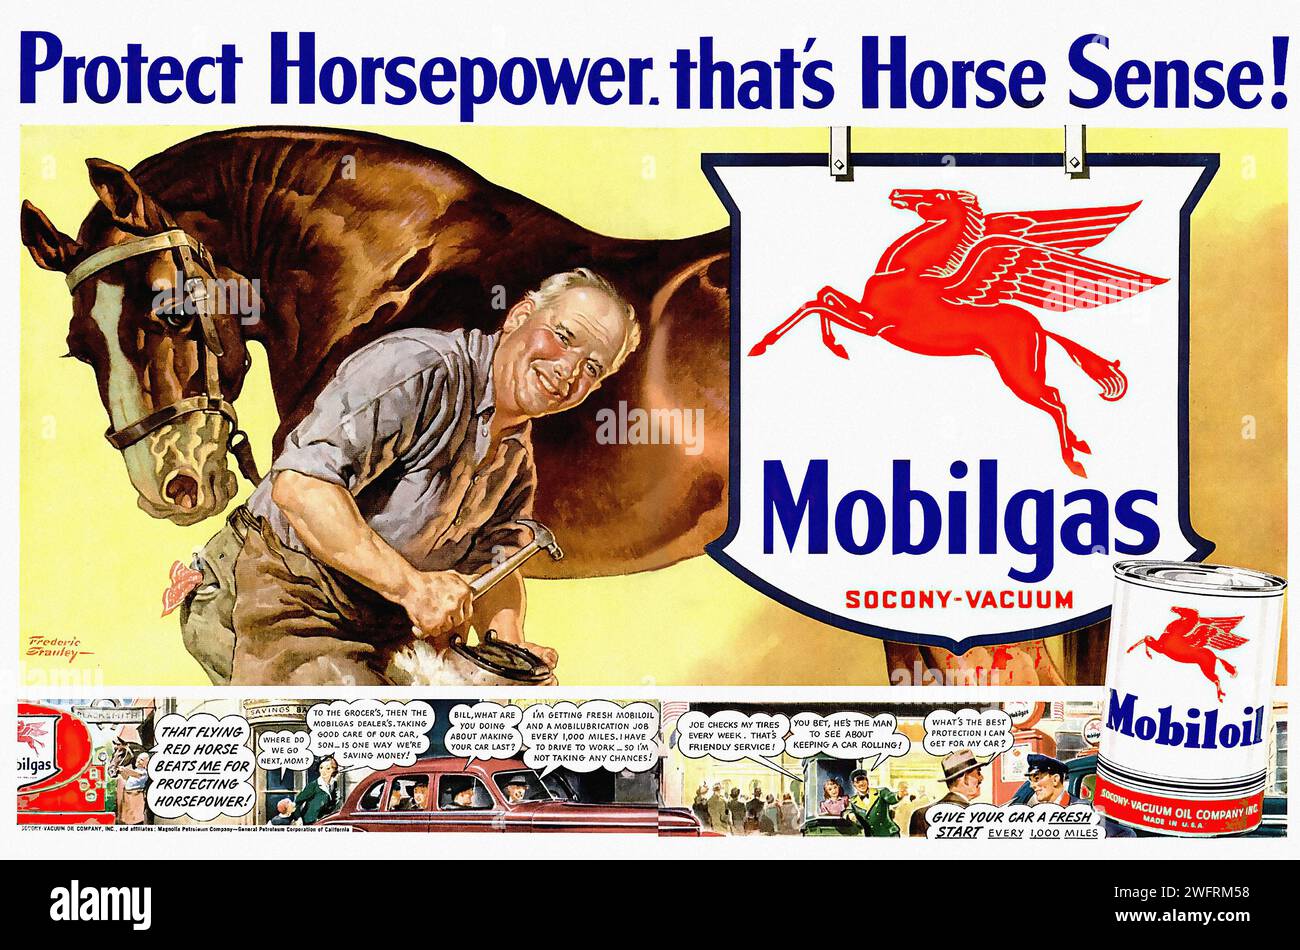 « PROTÉGEZ LA PUISSANCE. C’EST LE SENS DU CHEVAL ! » Il s'agit d'une publicité vintage de l'époque de la Seconde Guerre mondiale, originaire des États-Unis. Il présente une grande illustration d'un cheval brun avec un logo rouge Pegasus sur son côté, étant toiletté par un homme. La publicité est pour Mobilgas et Mobiloil, et le texte encourage les téléspectateurs à « protéger Horsepower ». Le style graphique de l'image est rétro, avec des couleurs vives et du texte en gras. L'arrière-plan de la publicité est un collage de différentes images, y compris une voiture, une station-service et une canette de Mobiloil. - Publicité américaine (États-Unis), Seconde Guerre mondiale er Banque D'Images